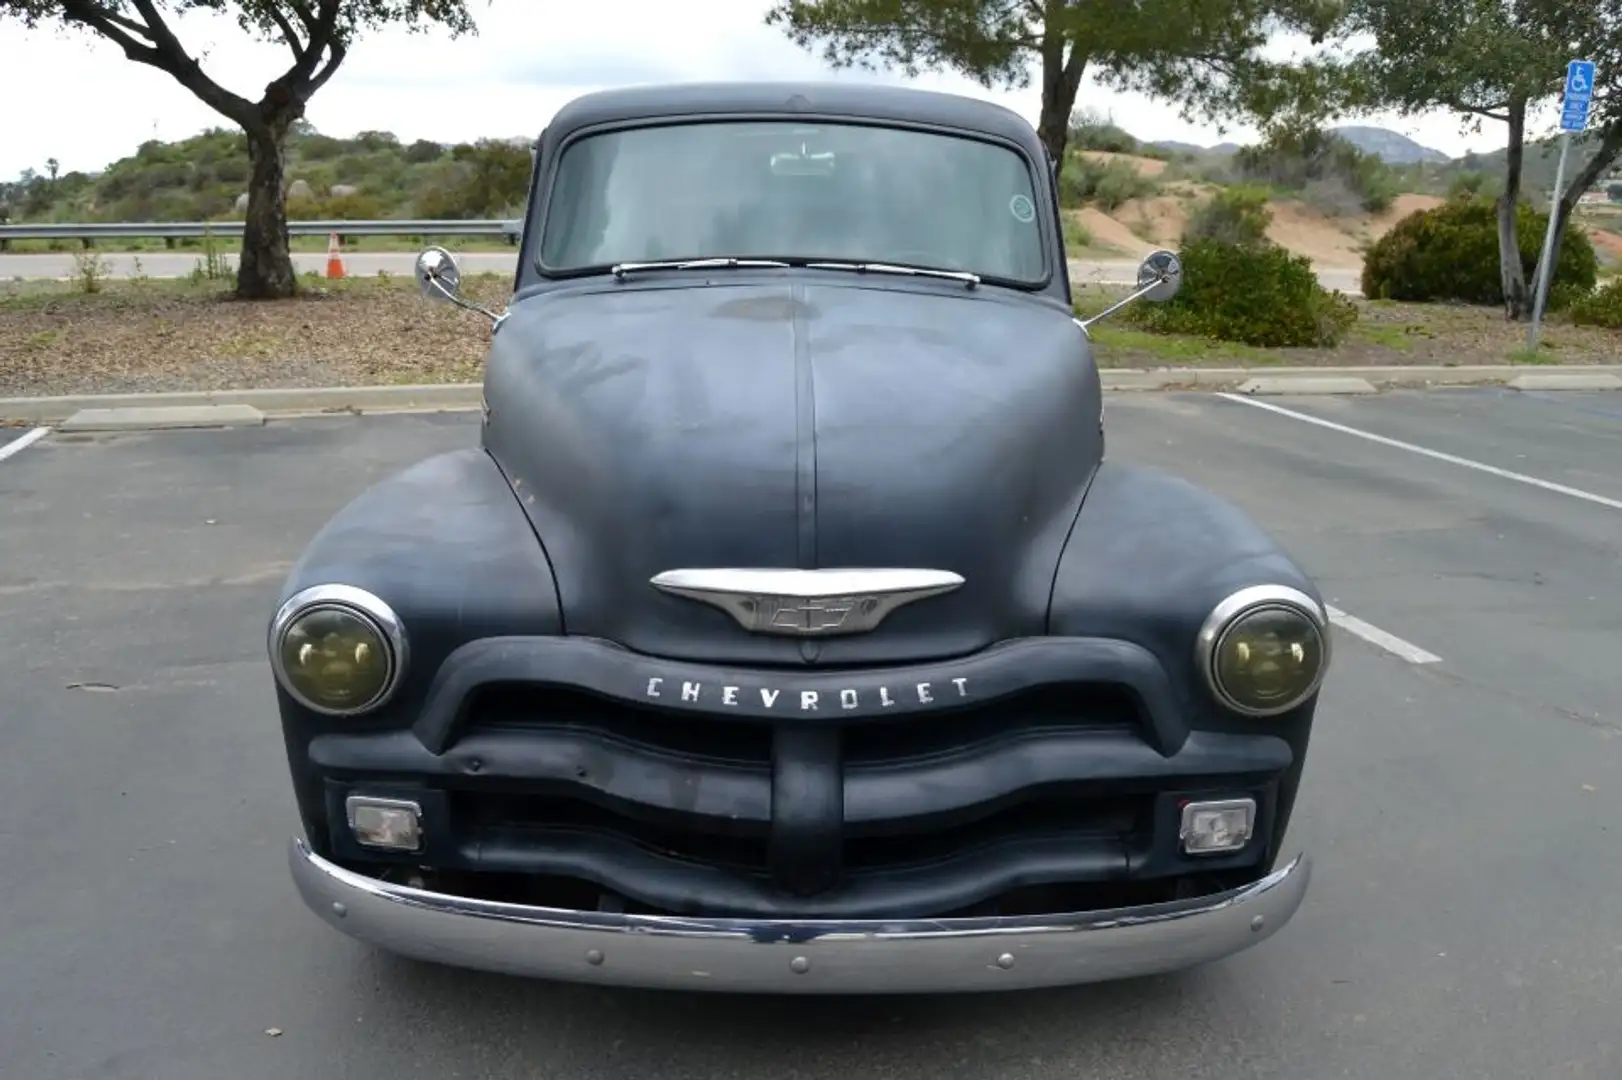 Chevrolet Egyéb - 2